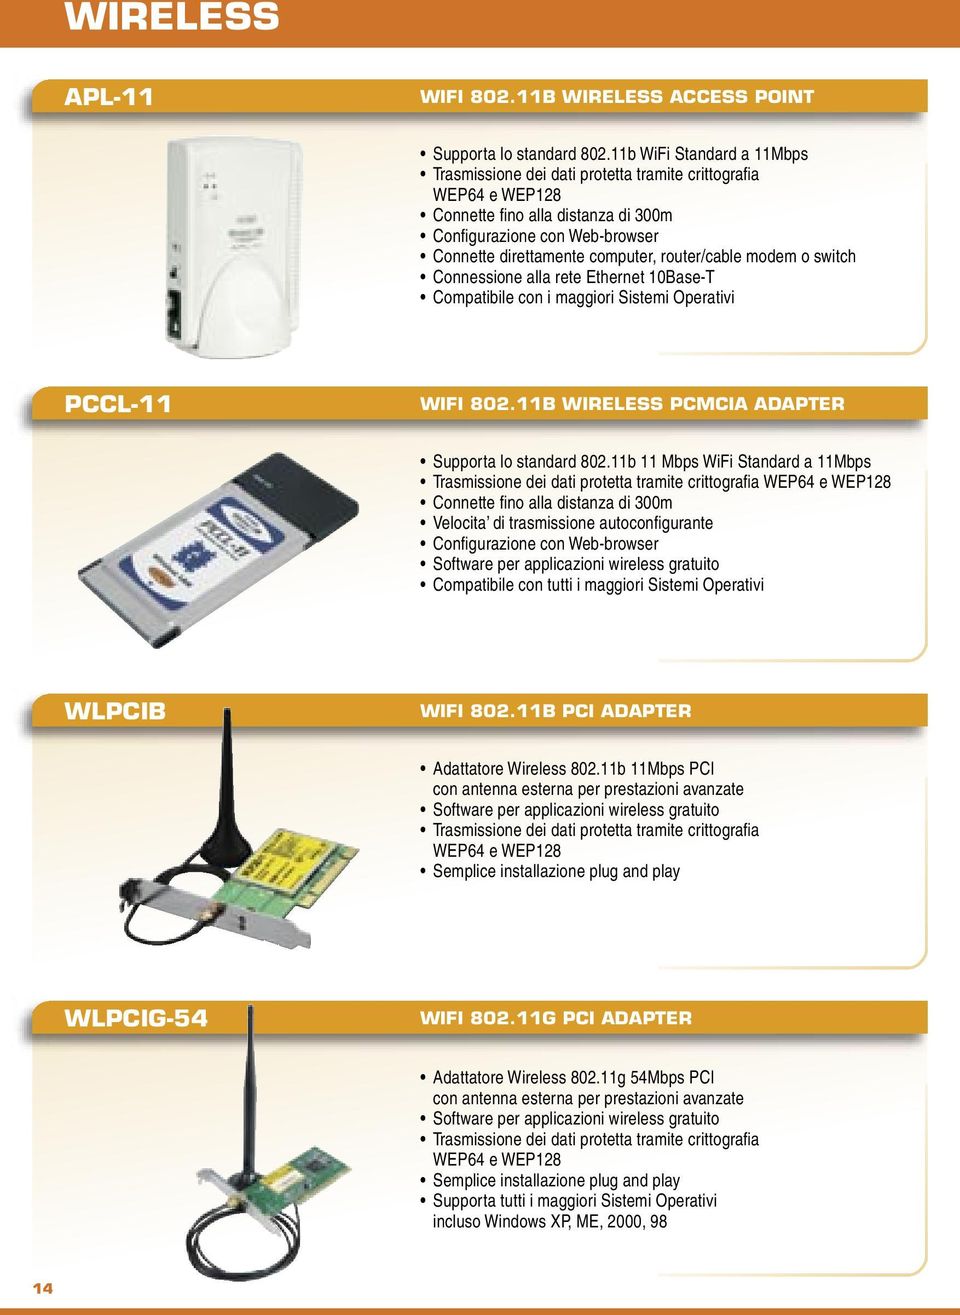 router/cable modem o switch Connessione alla rete Ethernet 10Base-T Compatibile con i maggiori Sistemi Operativi PCCL-11 WIFI 802.11B WIRELESS PCMCIA ADAPTER Supporta lo standard 802.